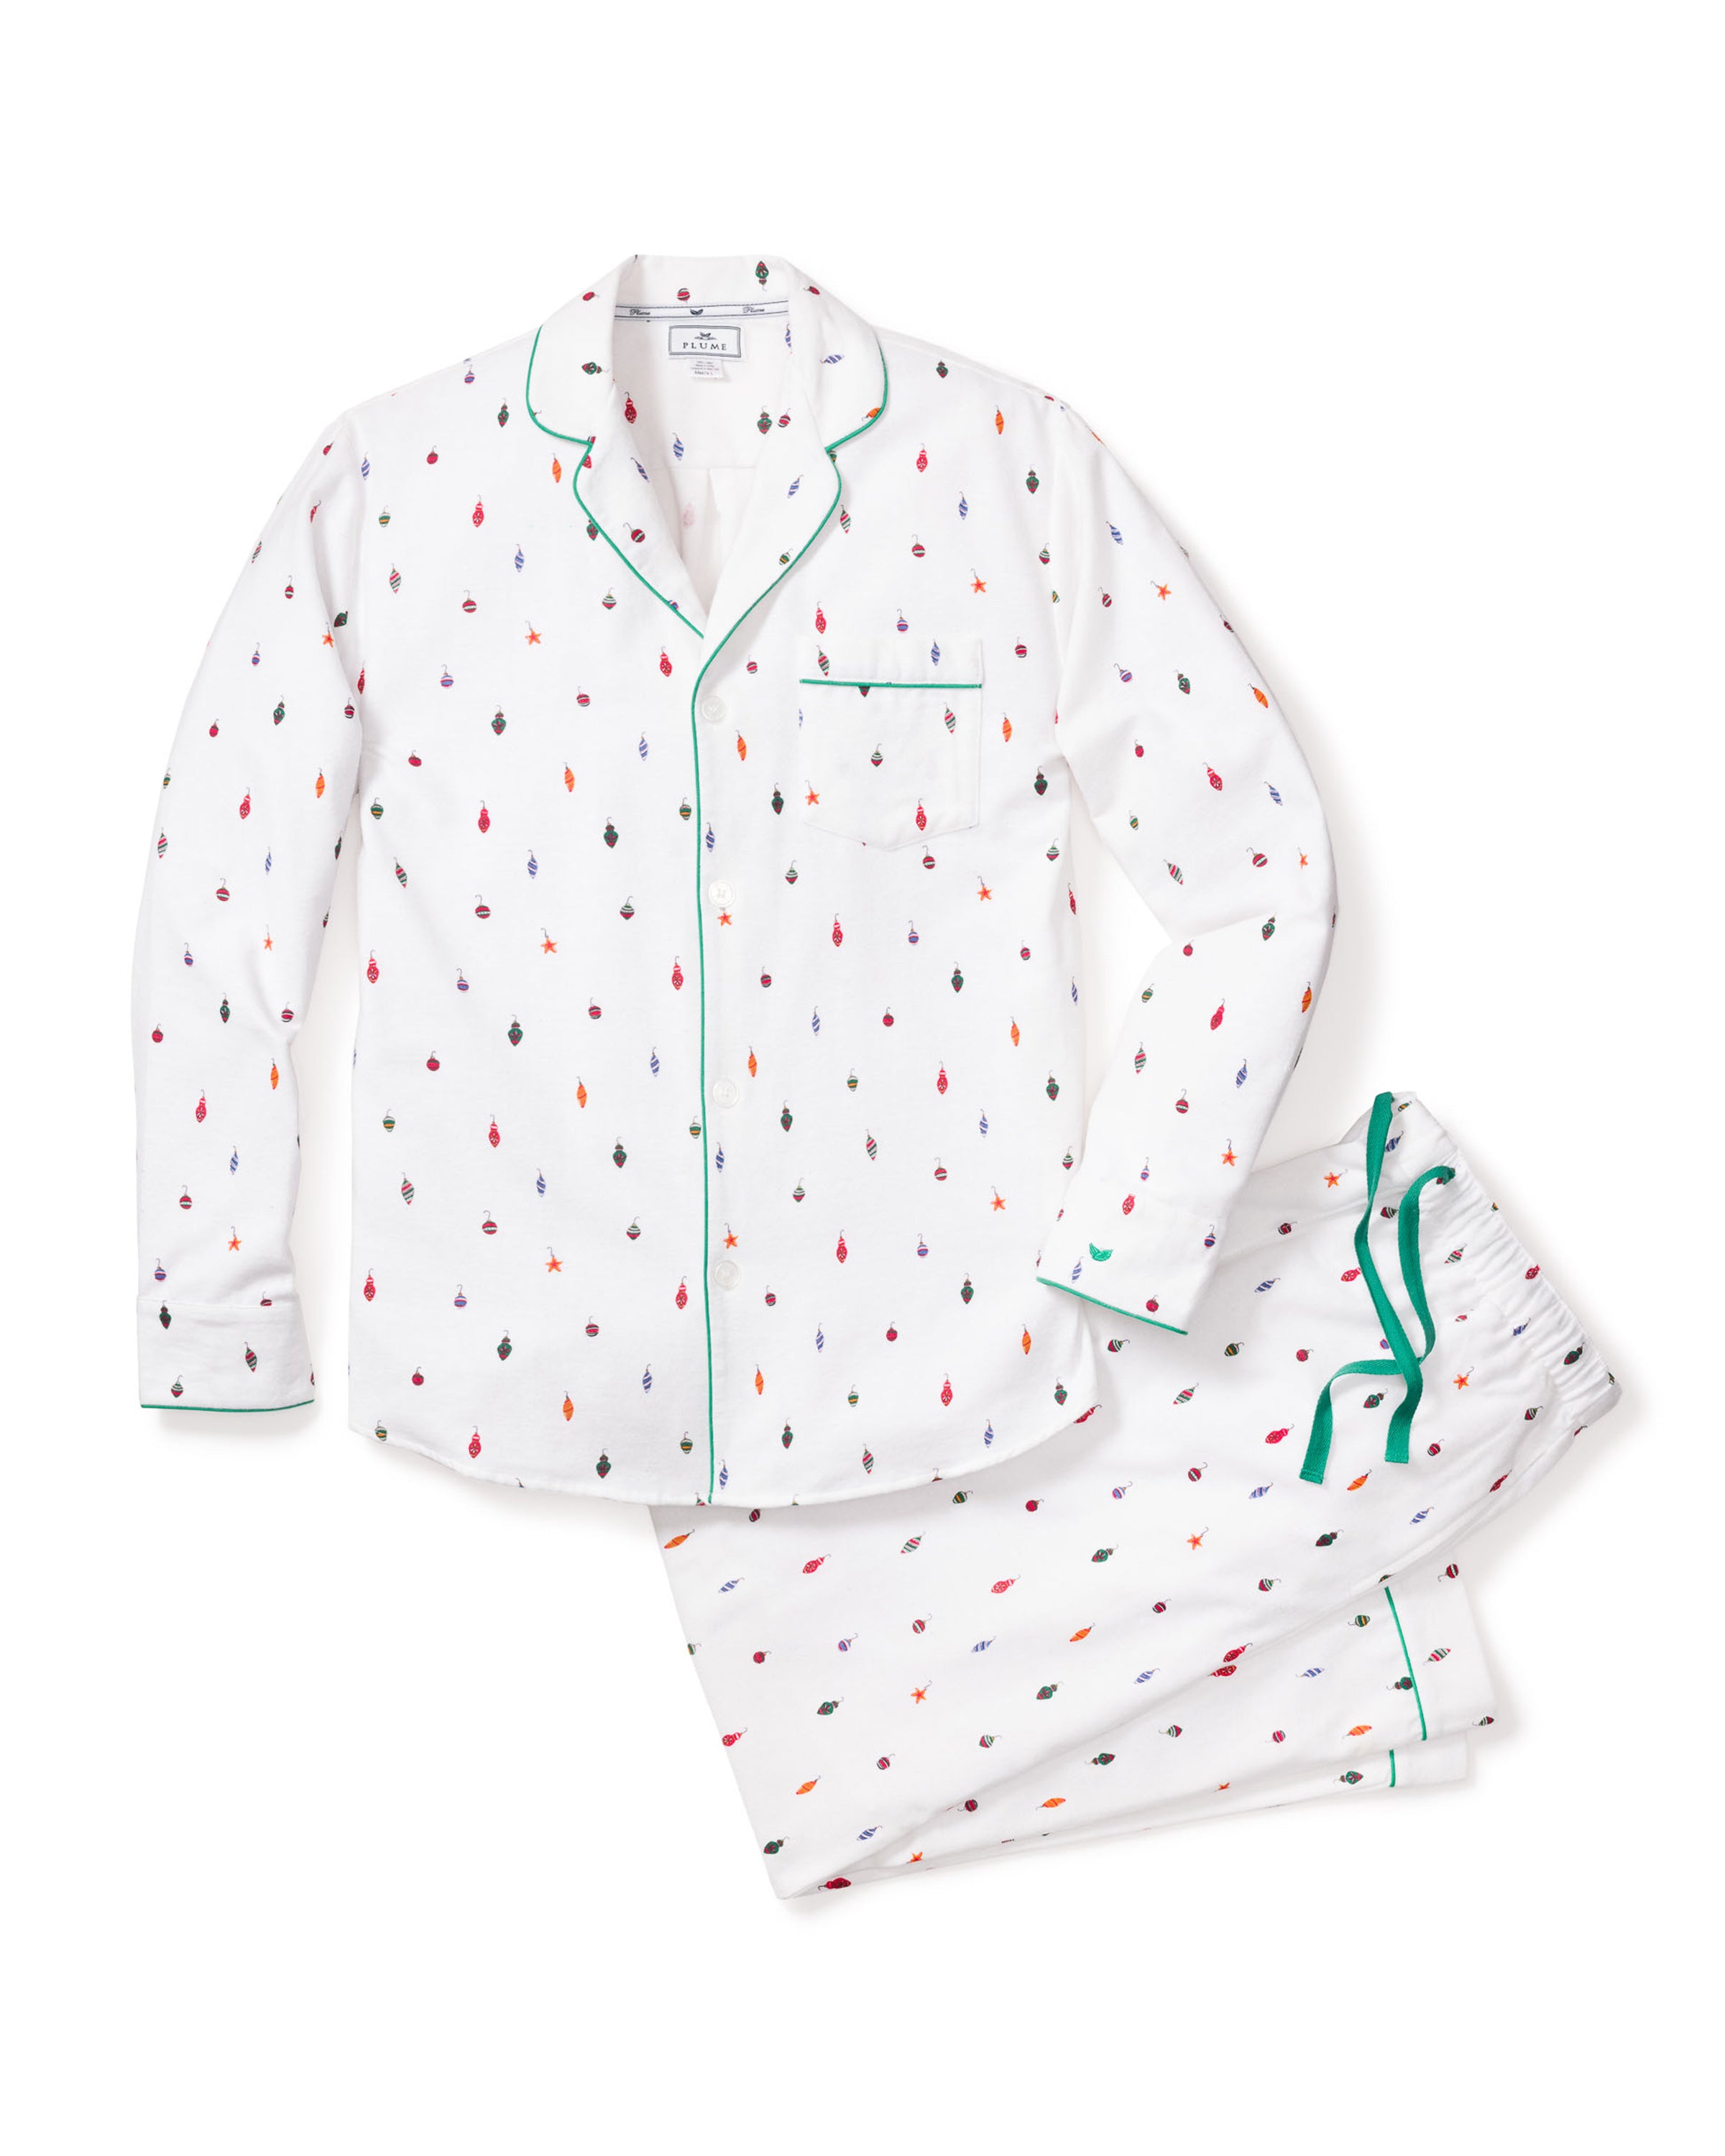 Men's Flannel Pajama Set in Yuletide Ornaments